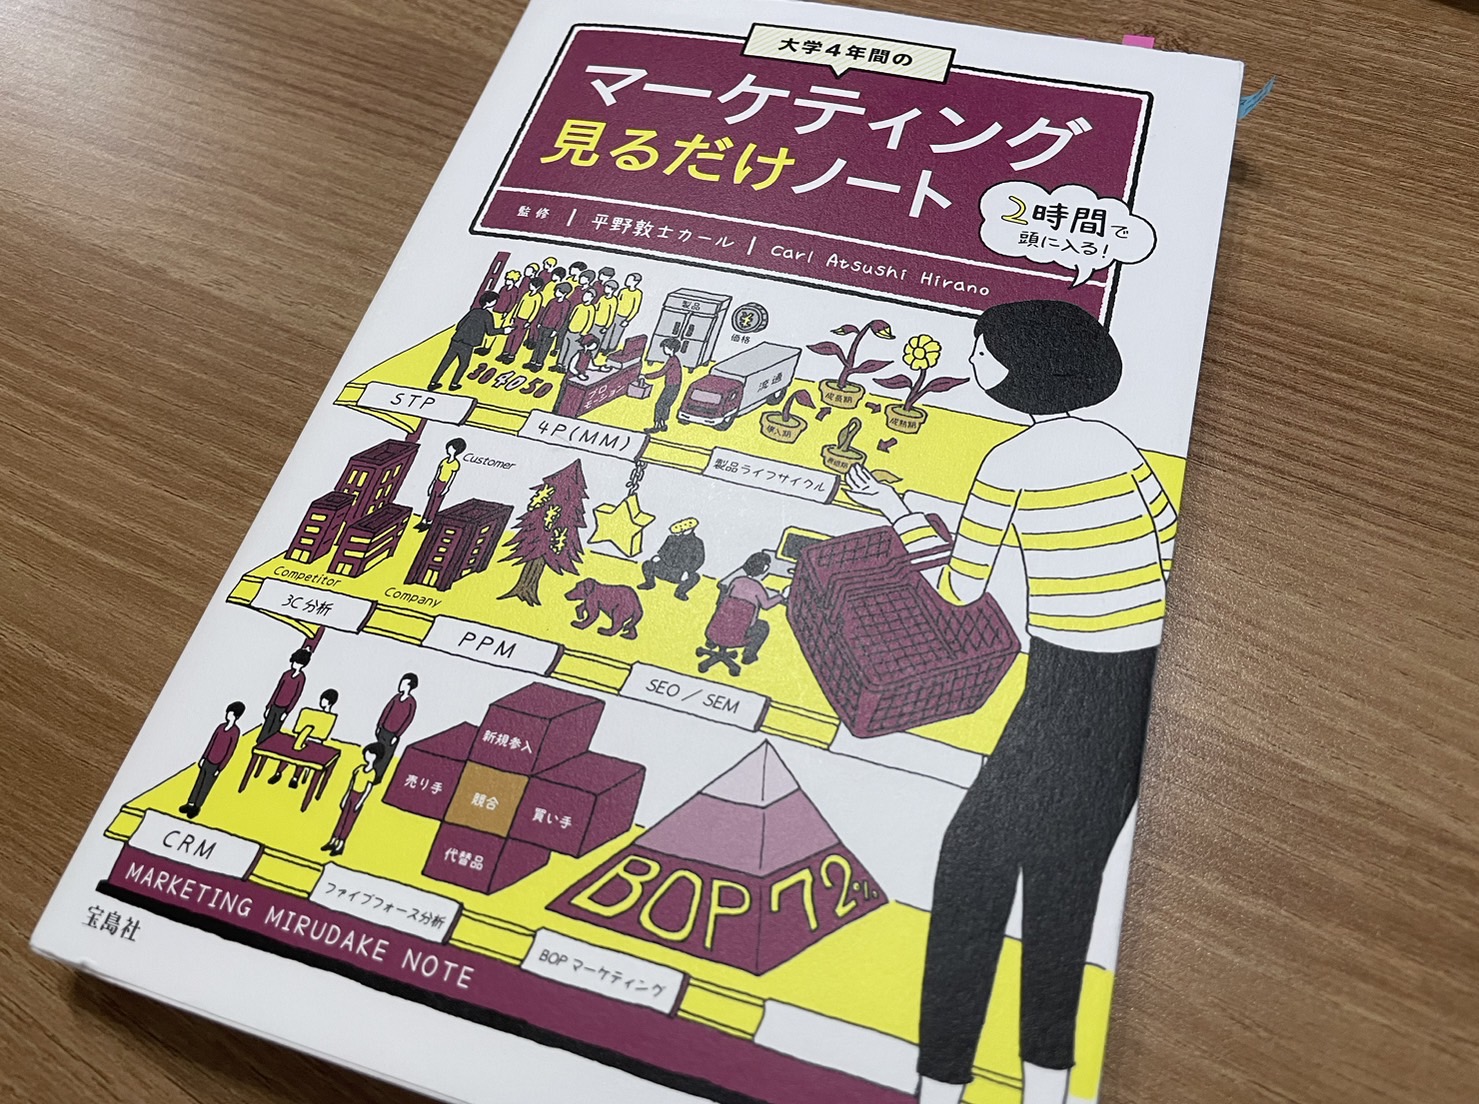 今月の一冊②『マーケティング見るだけノート』 | コラム | 熊本